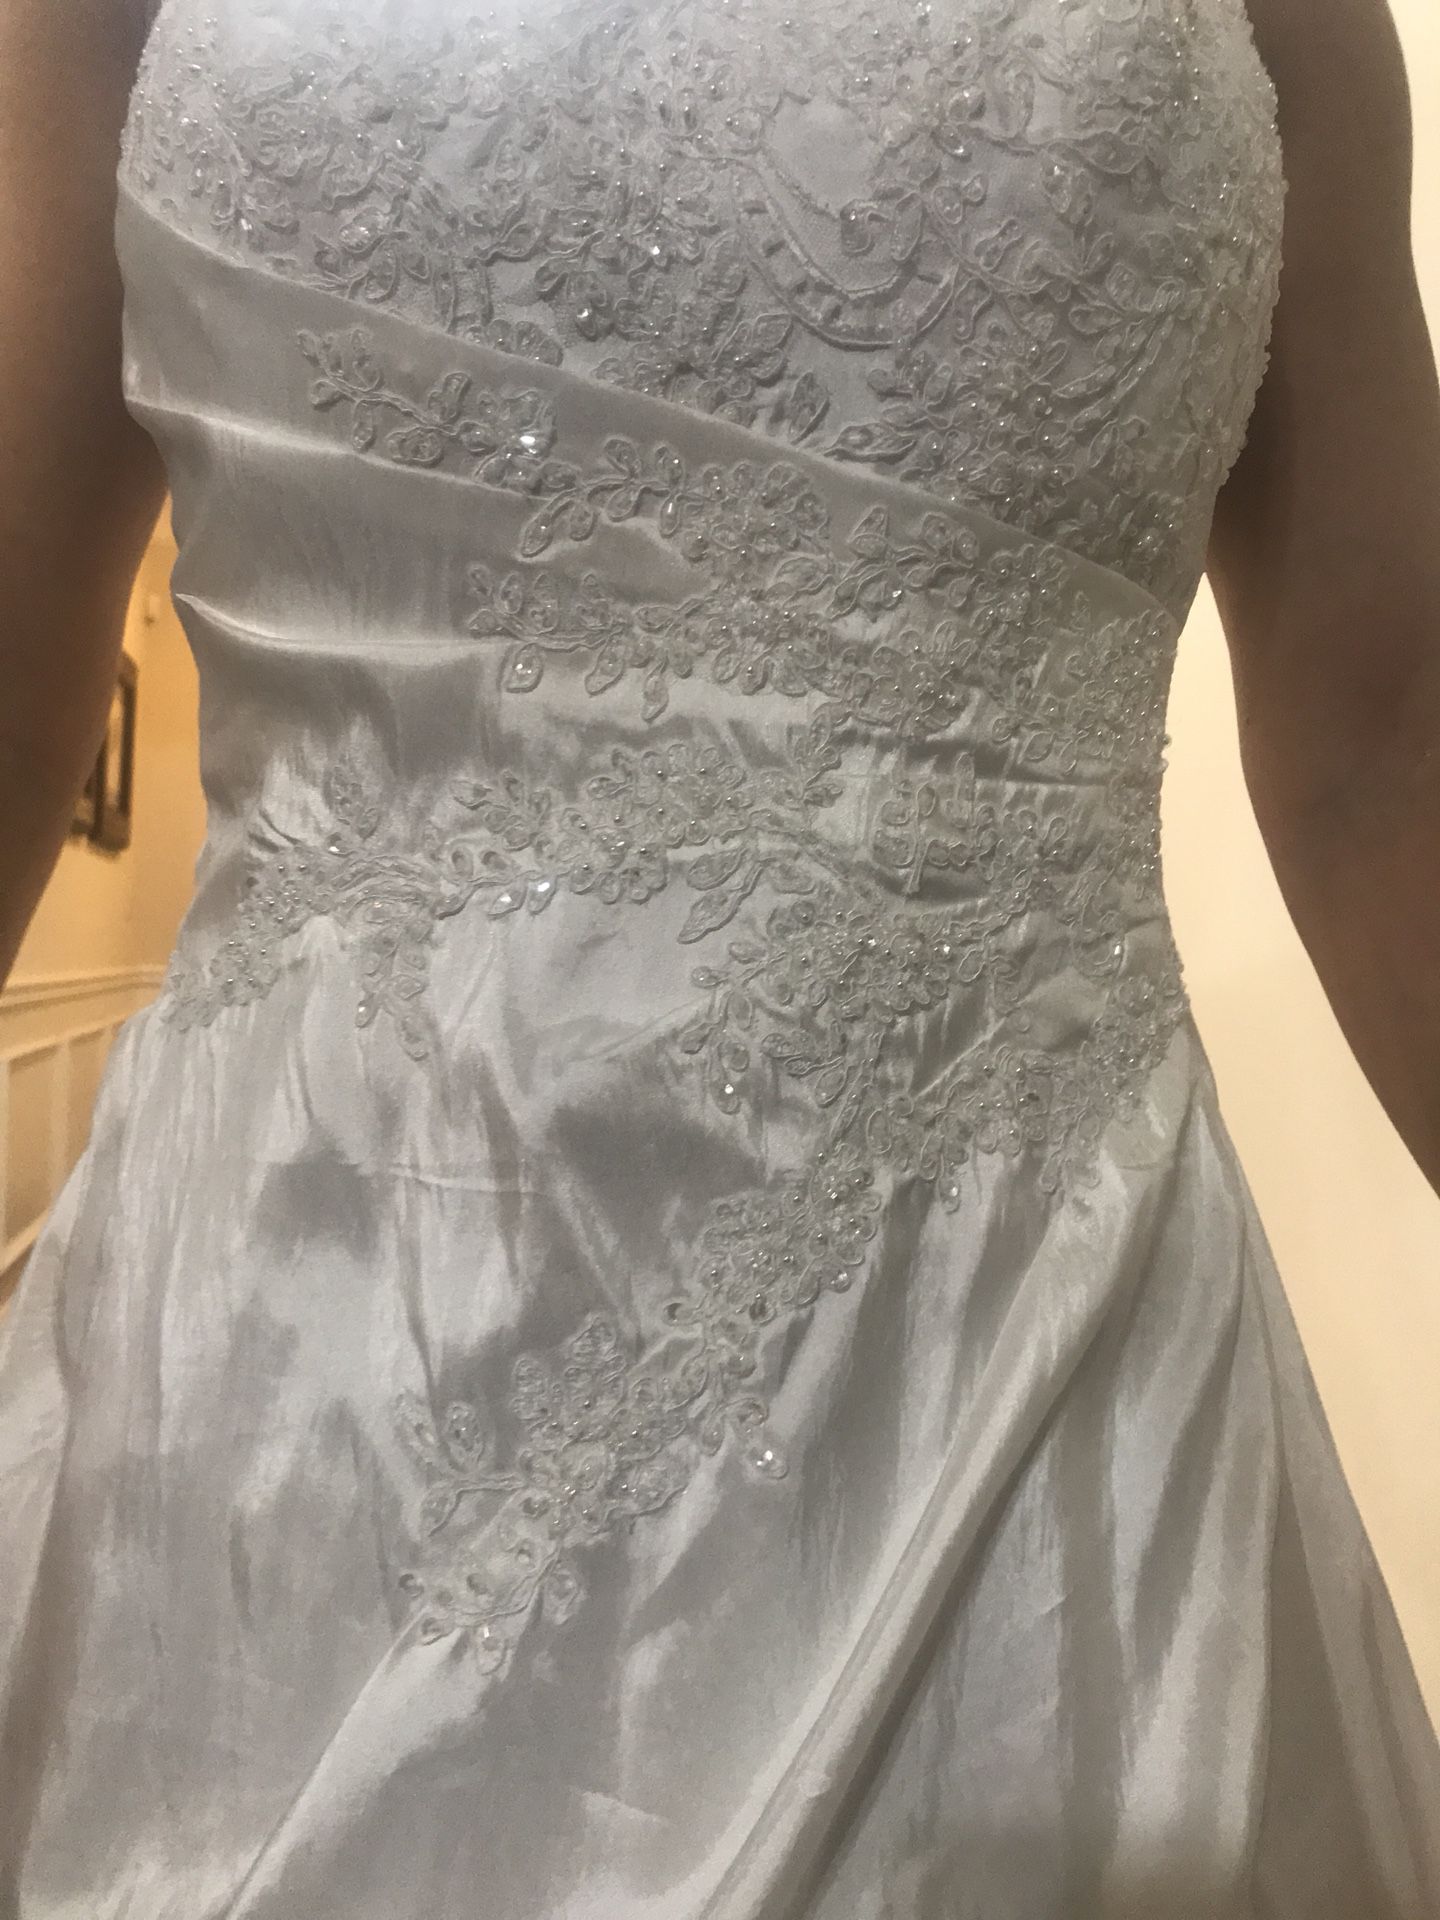 WEDDING DRESS SIZE 2